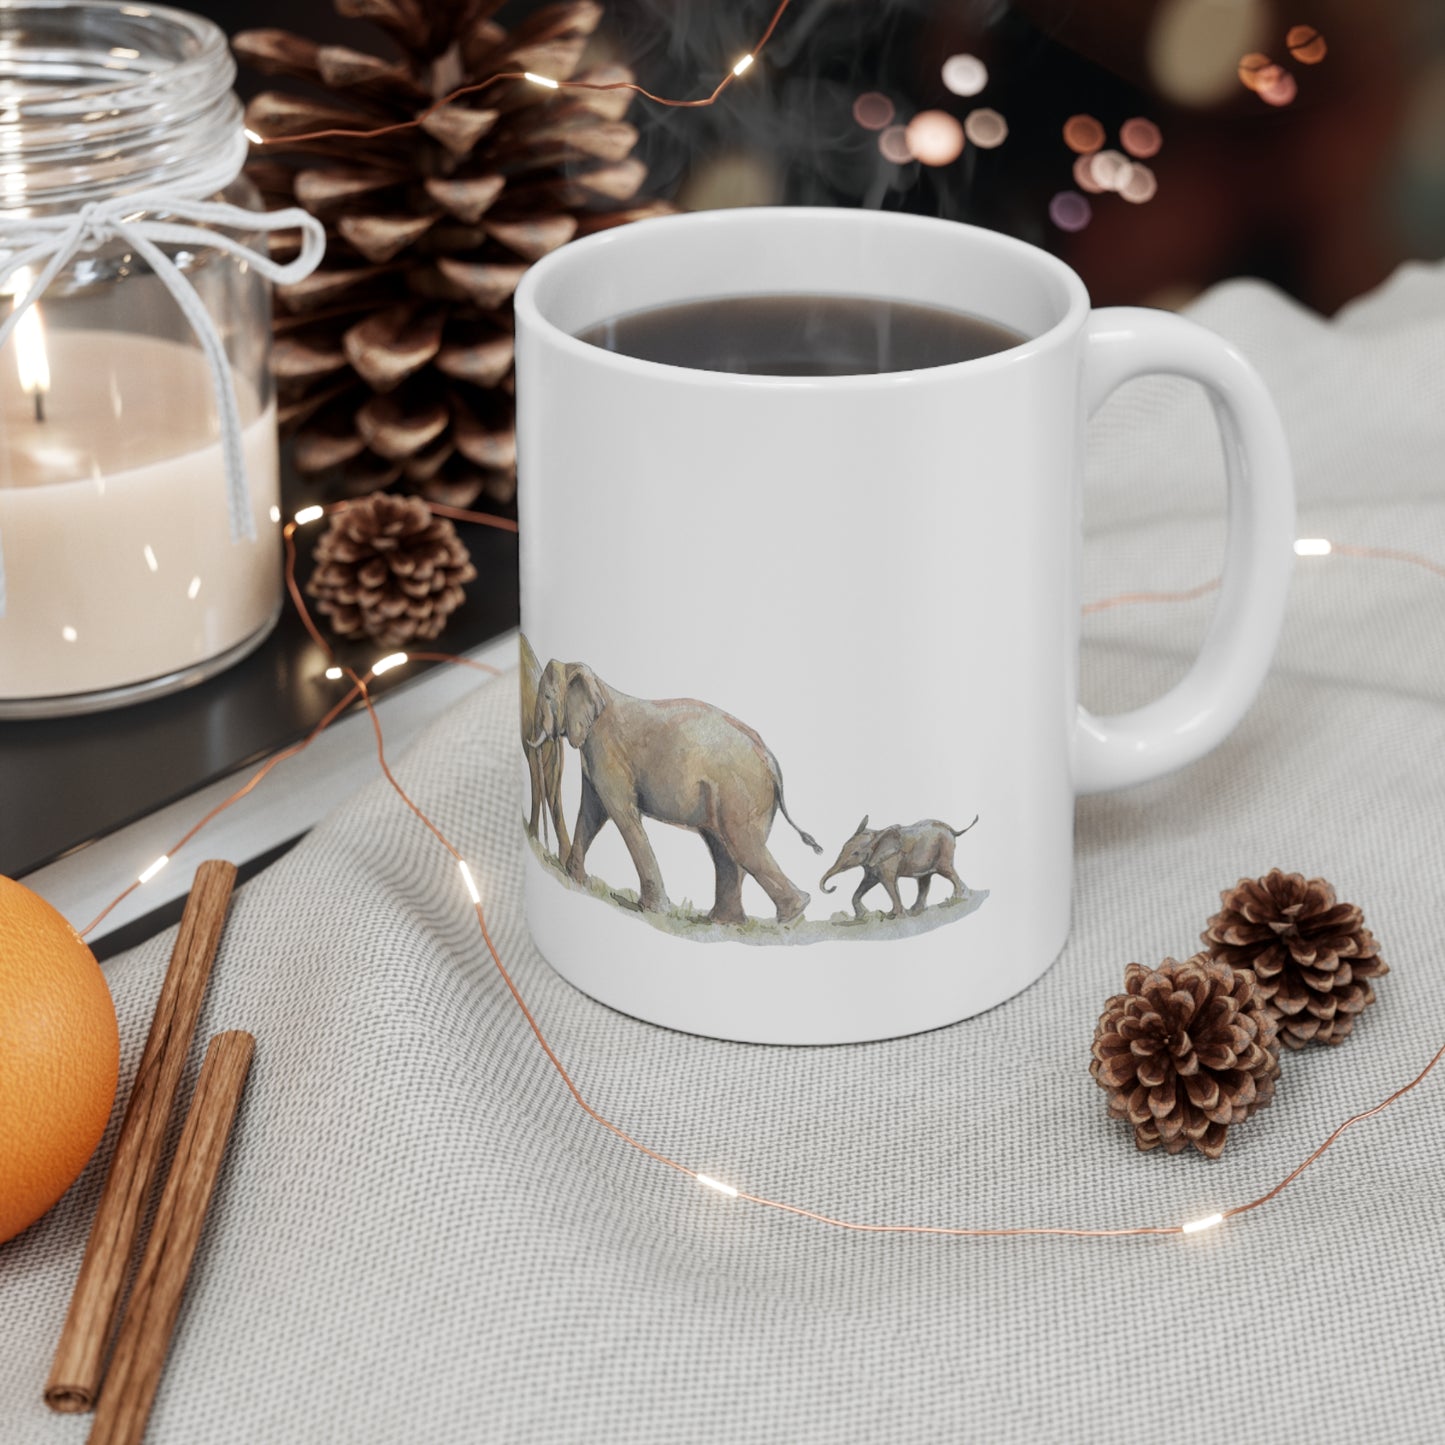 Elephant Parade DSWF/GRI Ceramic Coffee Cups, 11oz, 15oz